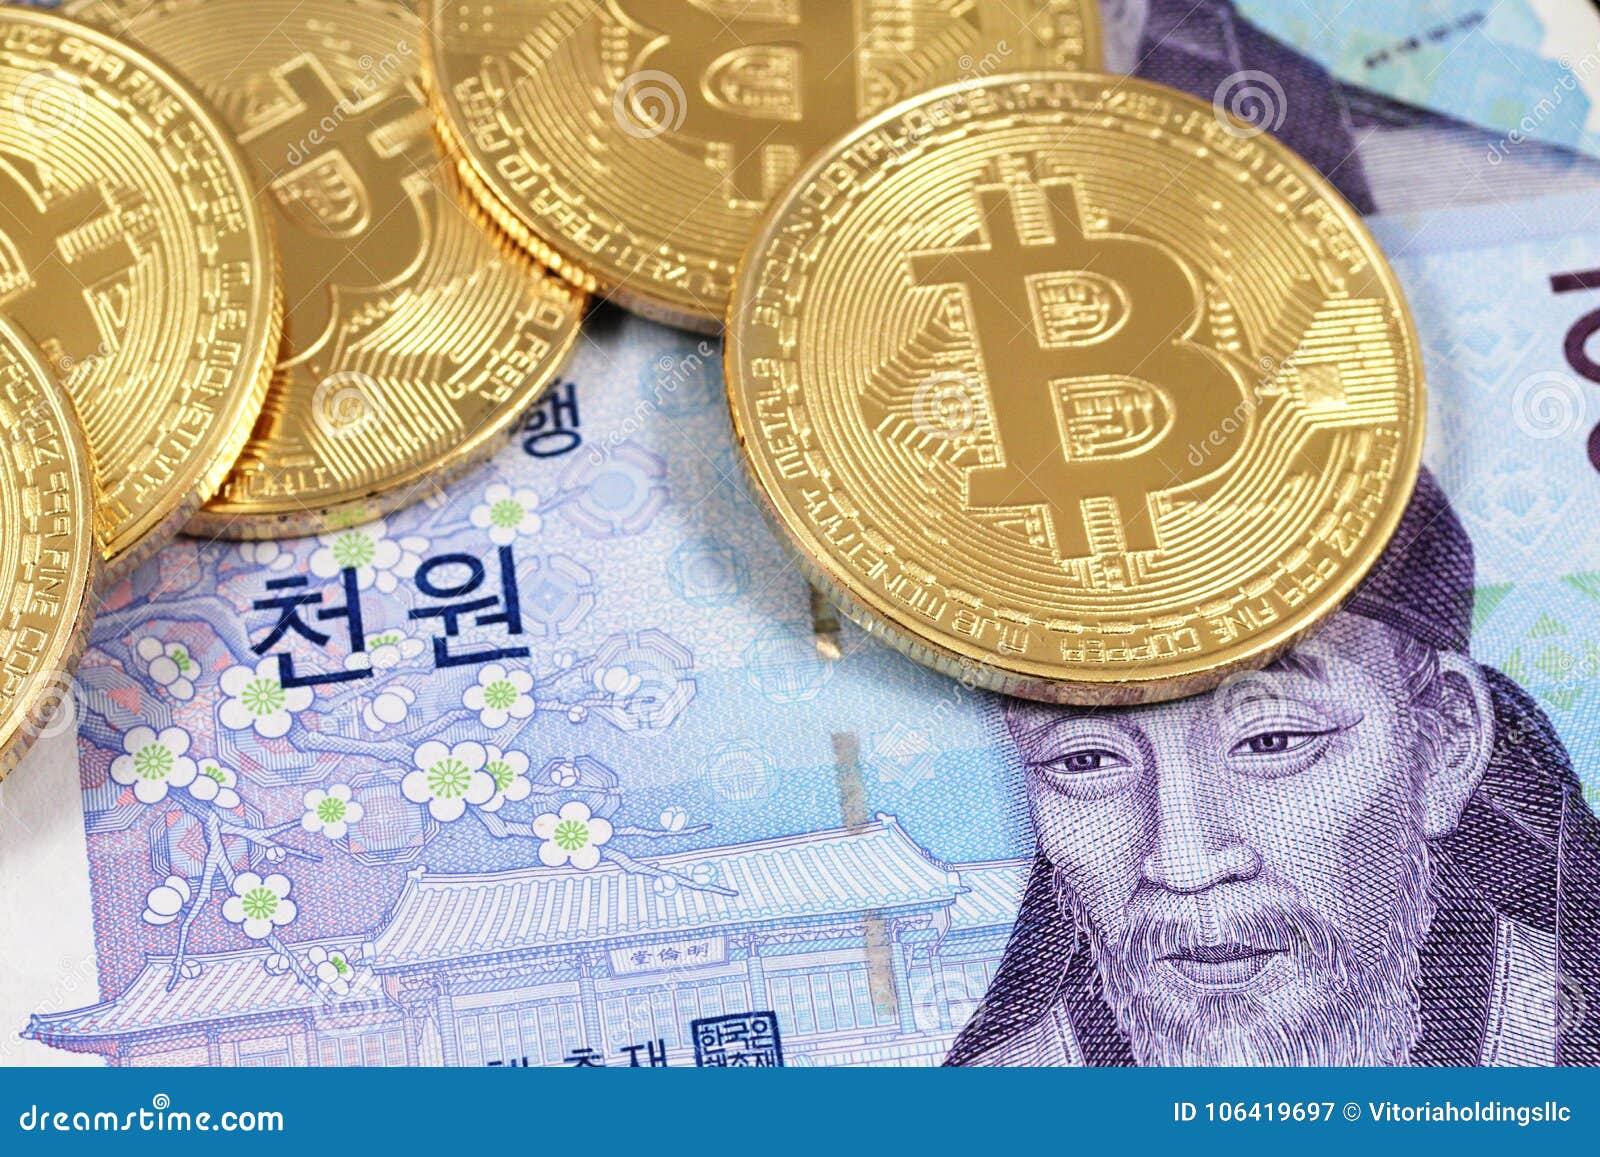 south korea bitcoin